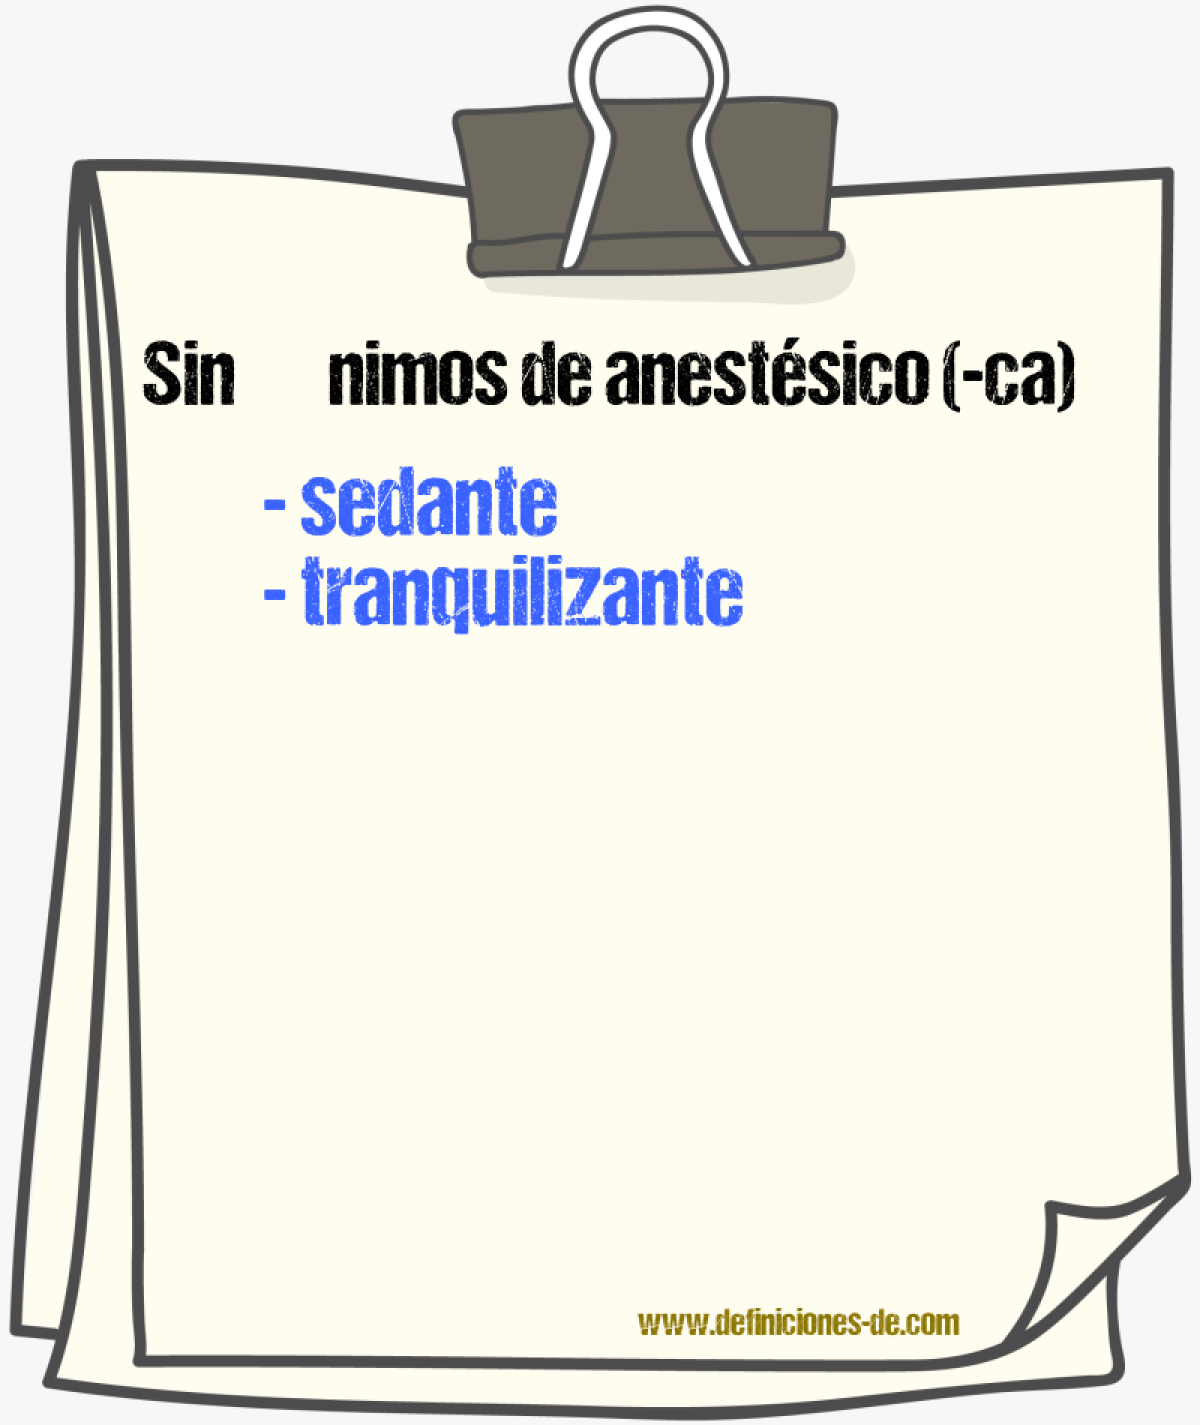 Sinónimos de anestésico